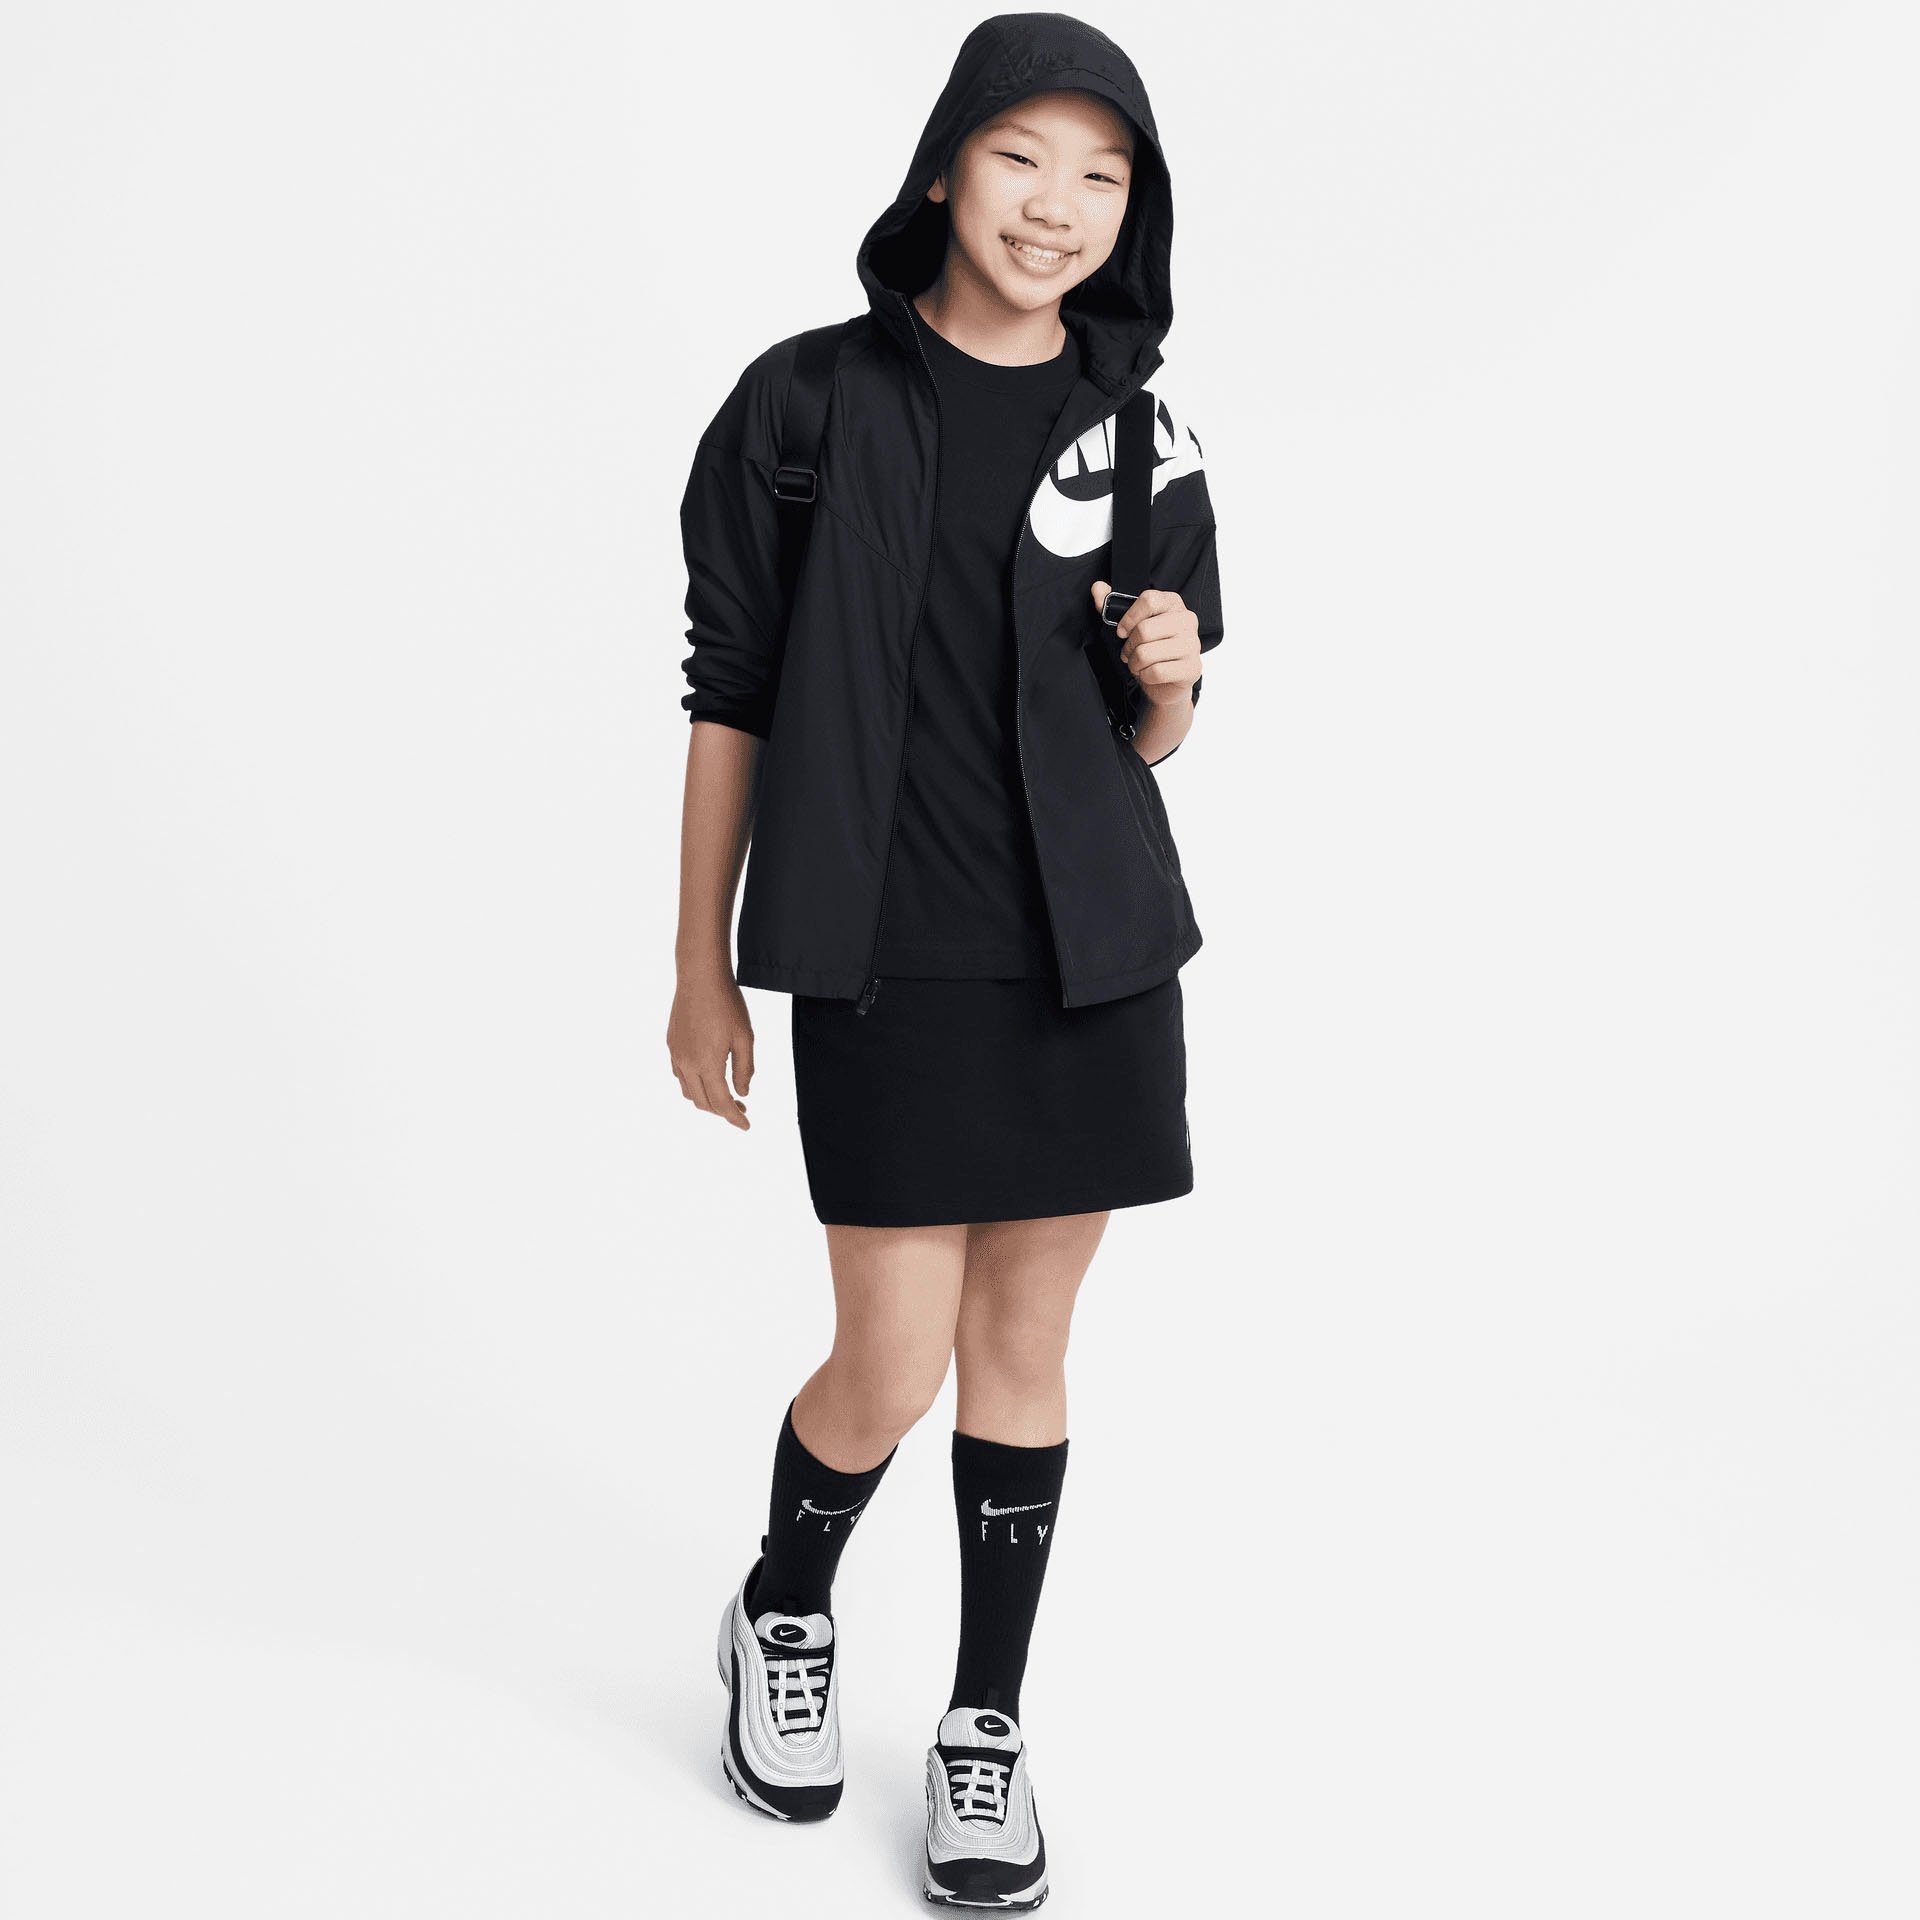 BIG (GIRLS) T-Shirt Nike T-SHIRT schwarz KIDS' Sportswear